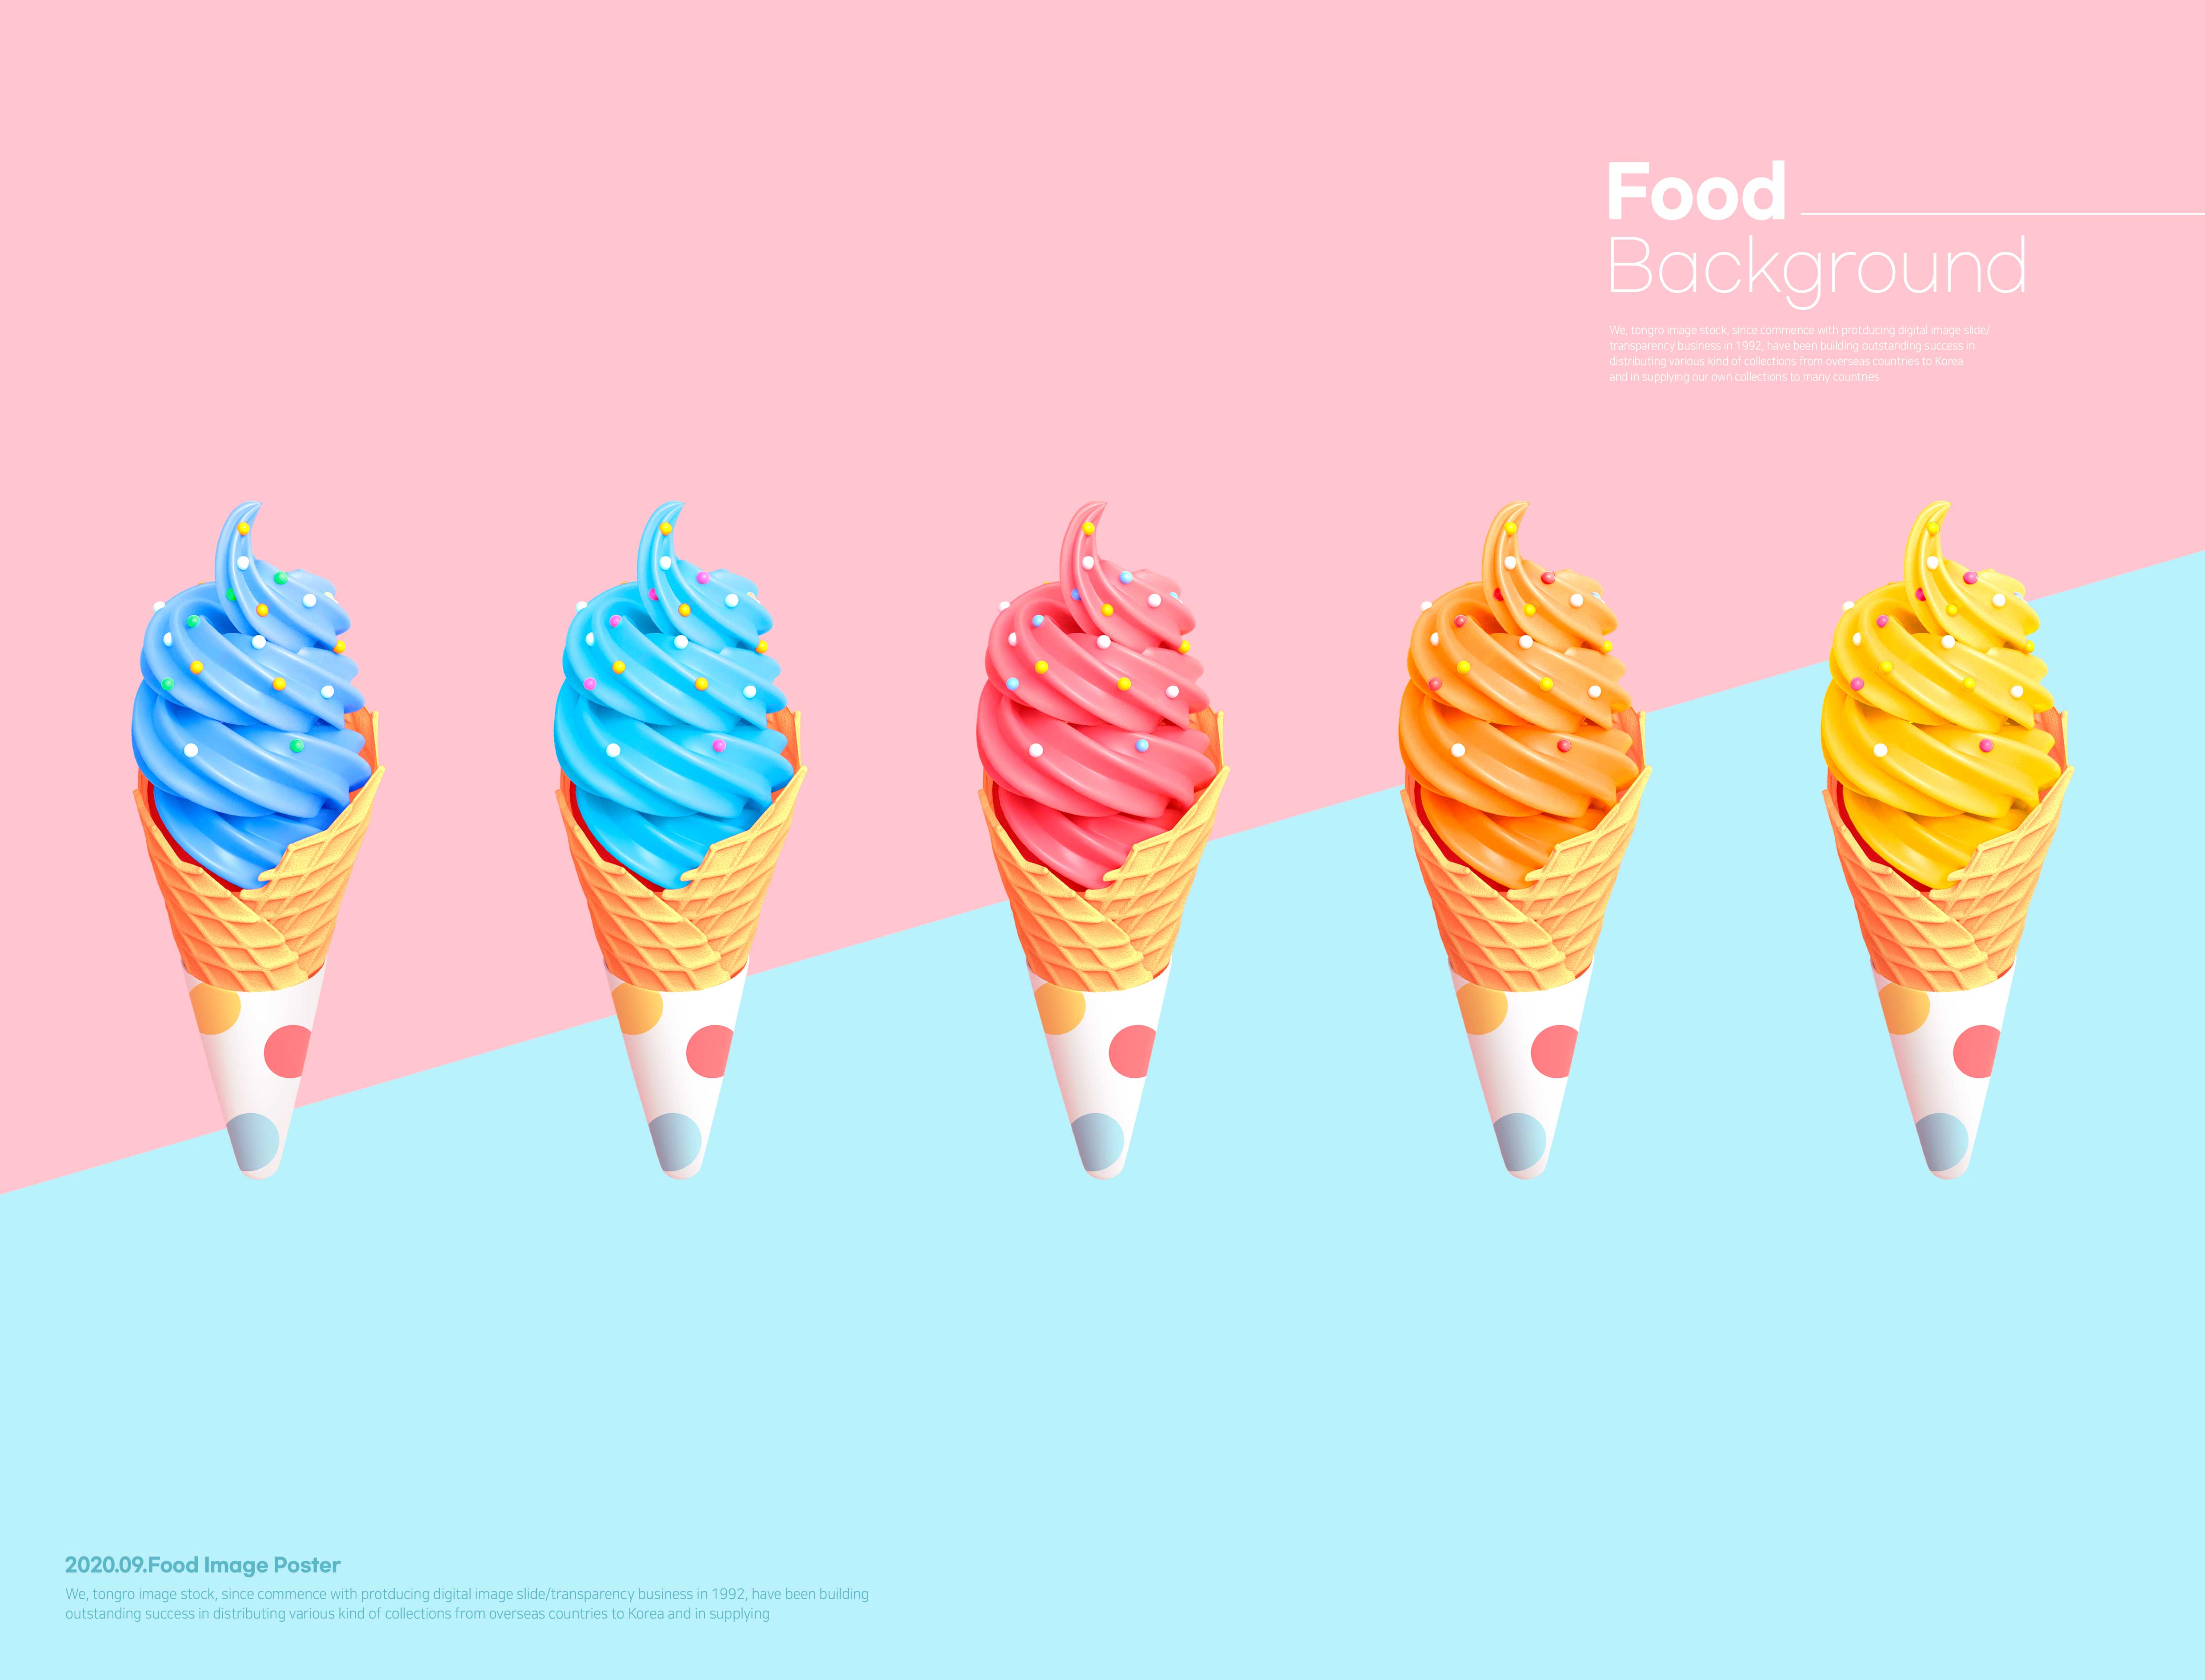 冰淇淋多彩甜食背景海报设计psd素材设计素材模板